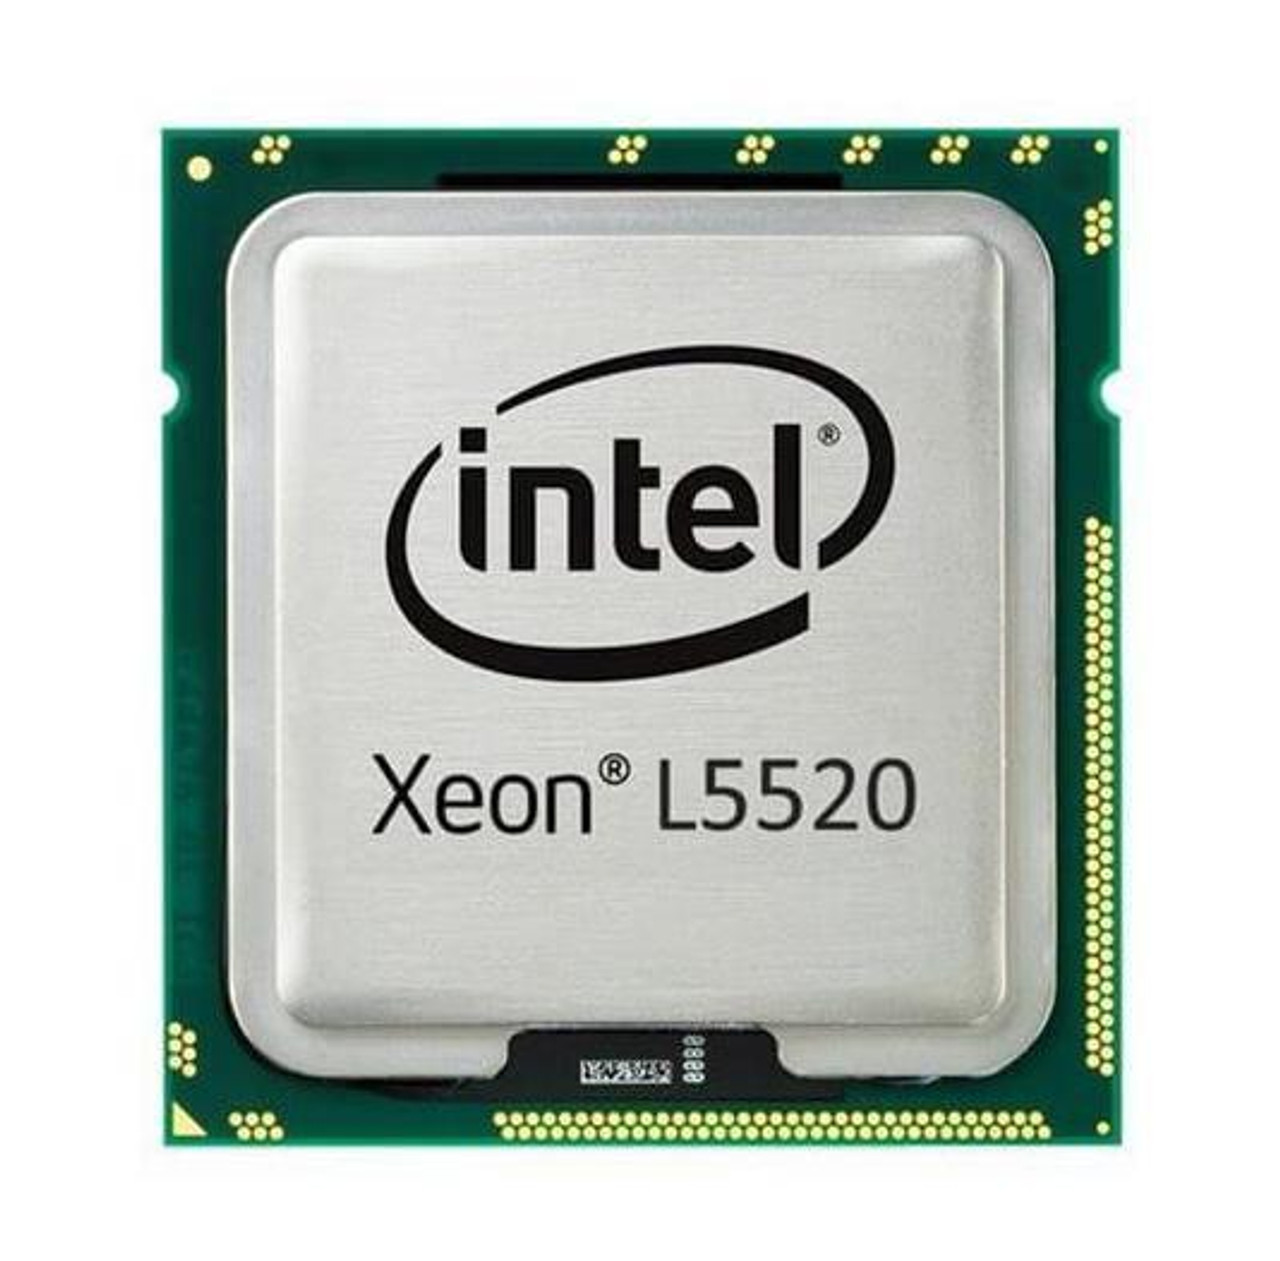 L5220 Intel Xeon L5520 Quad-Core 2.26GHz 5.86GT/s QPI 8MB L3 Cache Processor